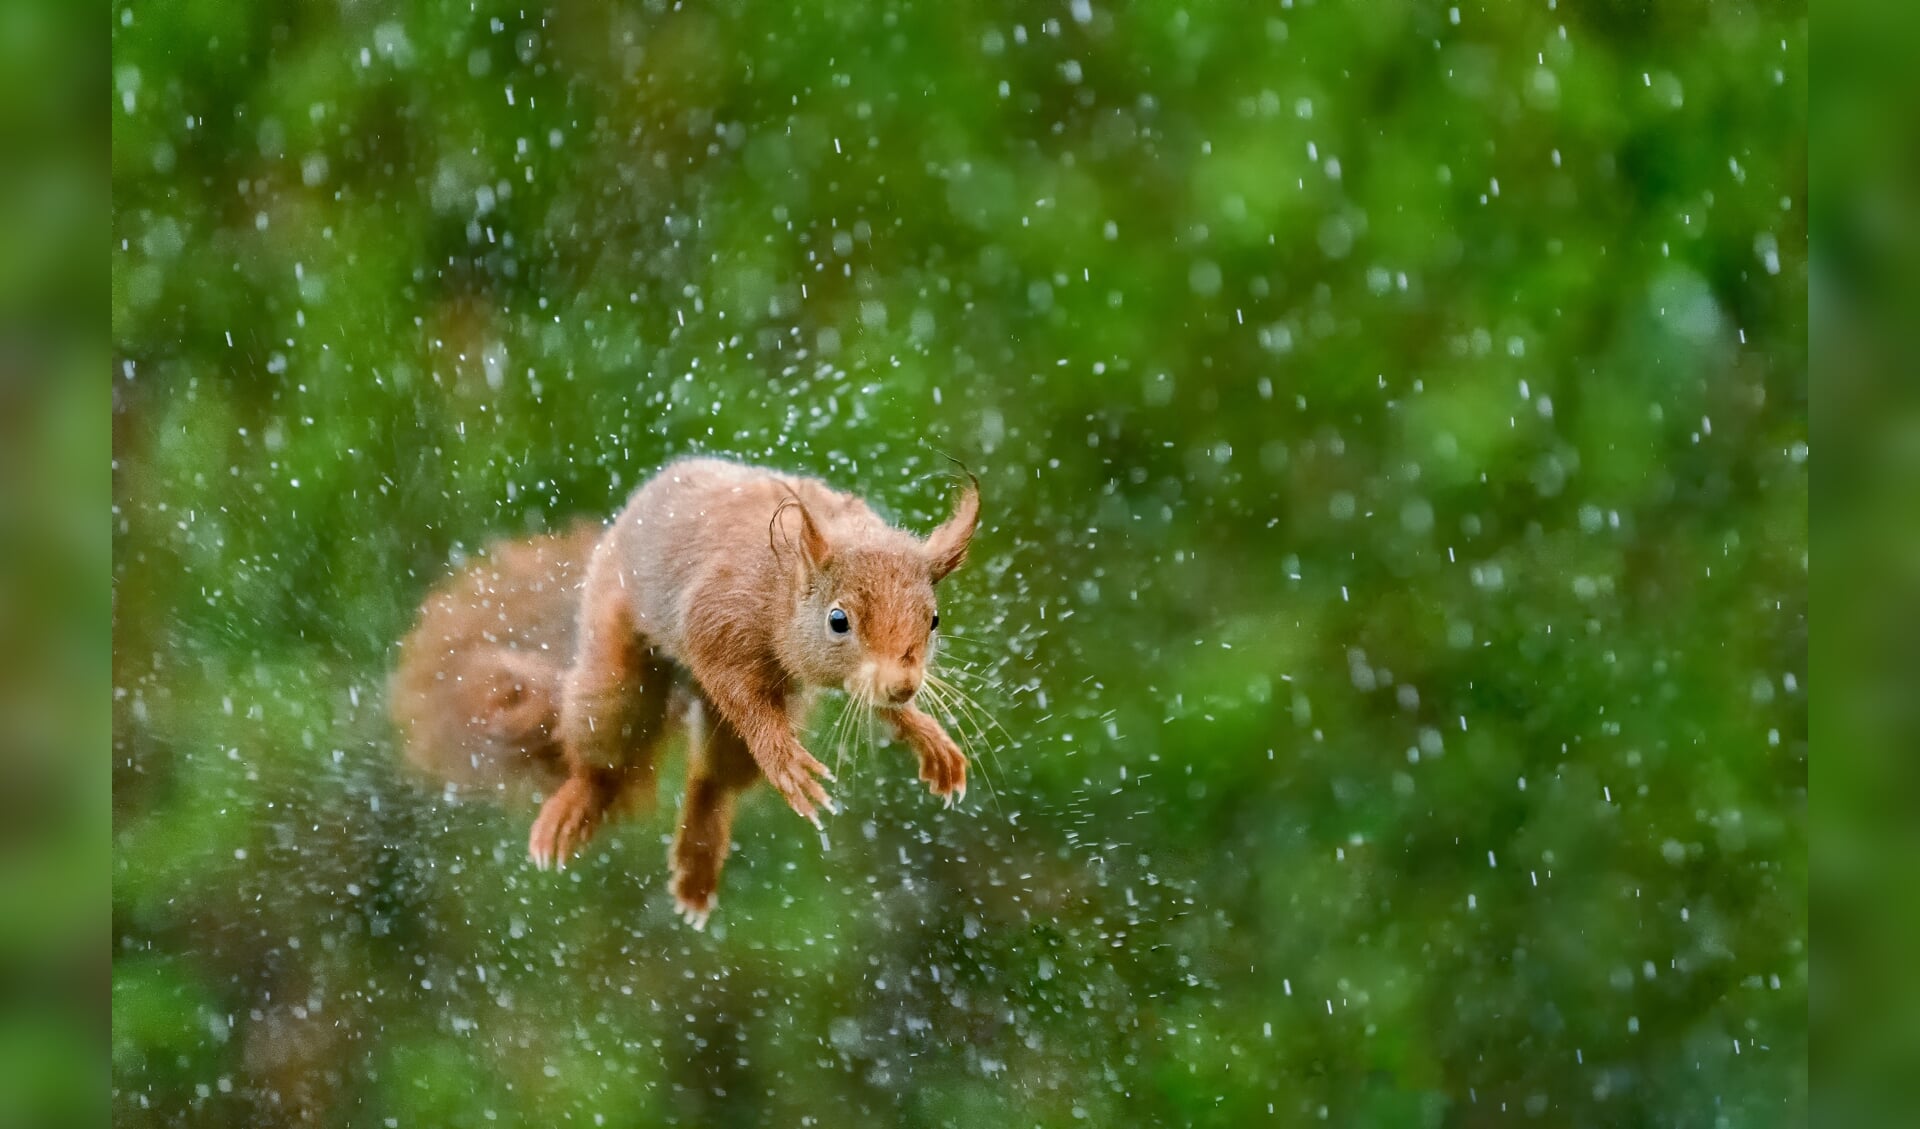 Een eekhoorn schudt tijdens een sprong in de stromende regen zijn vacht uit